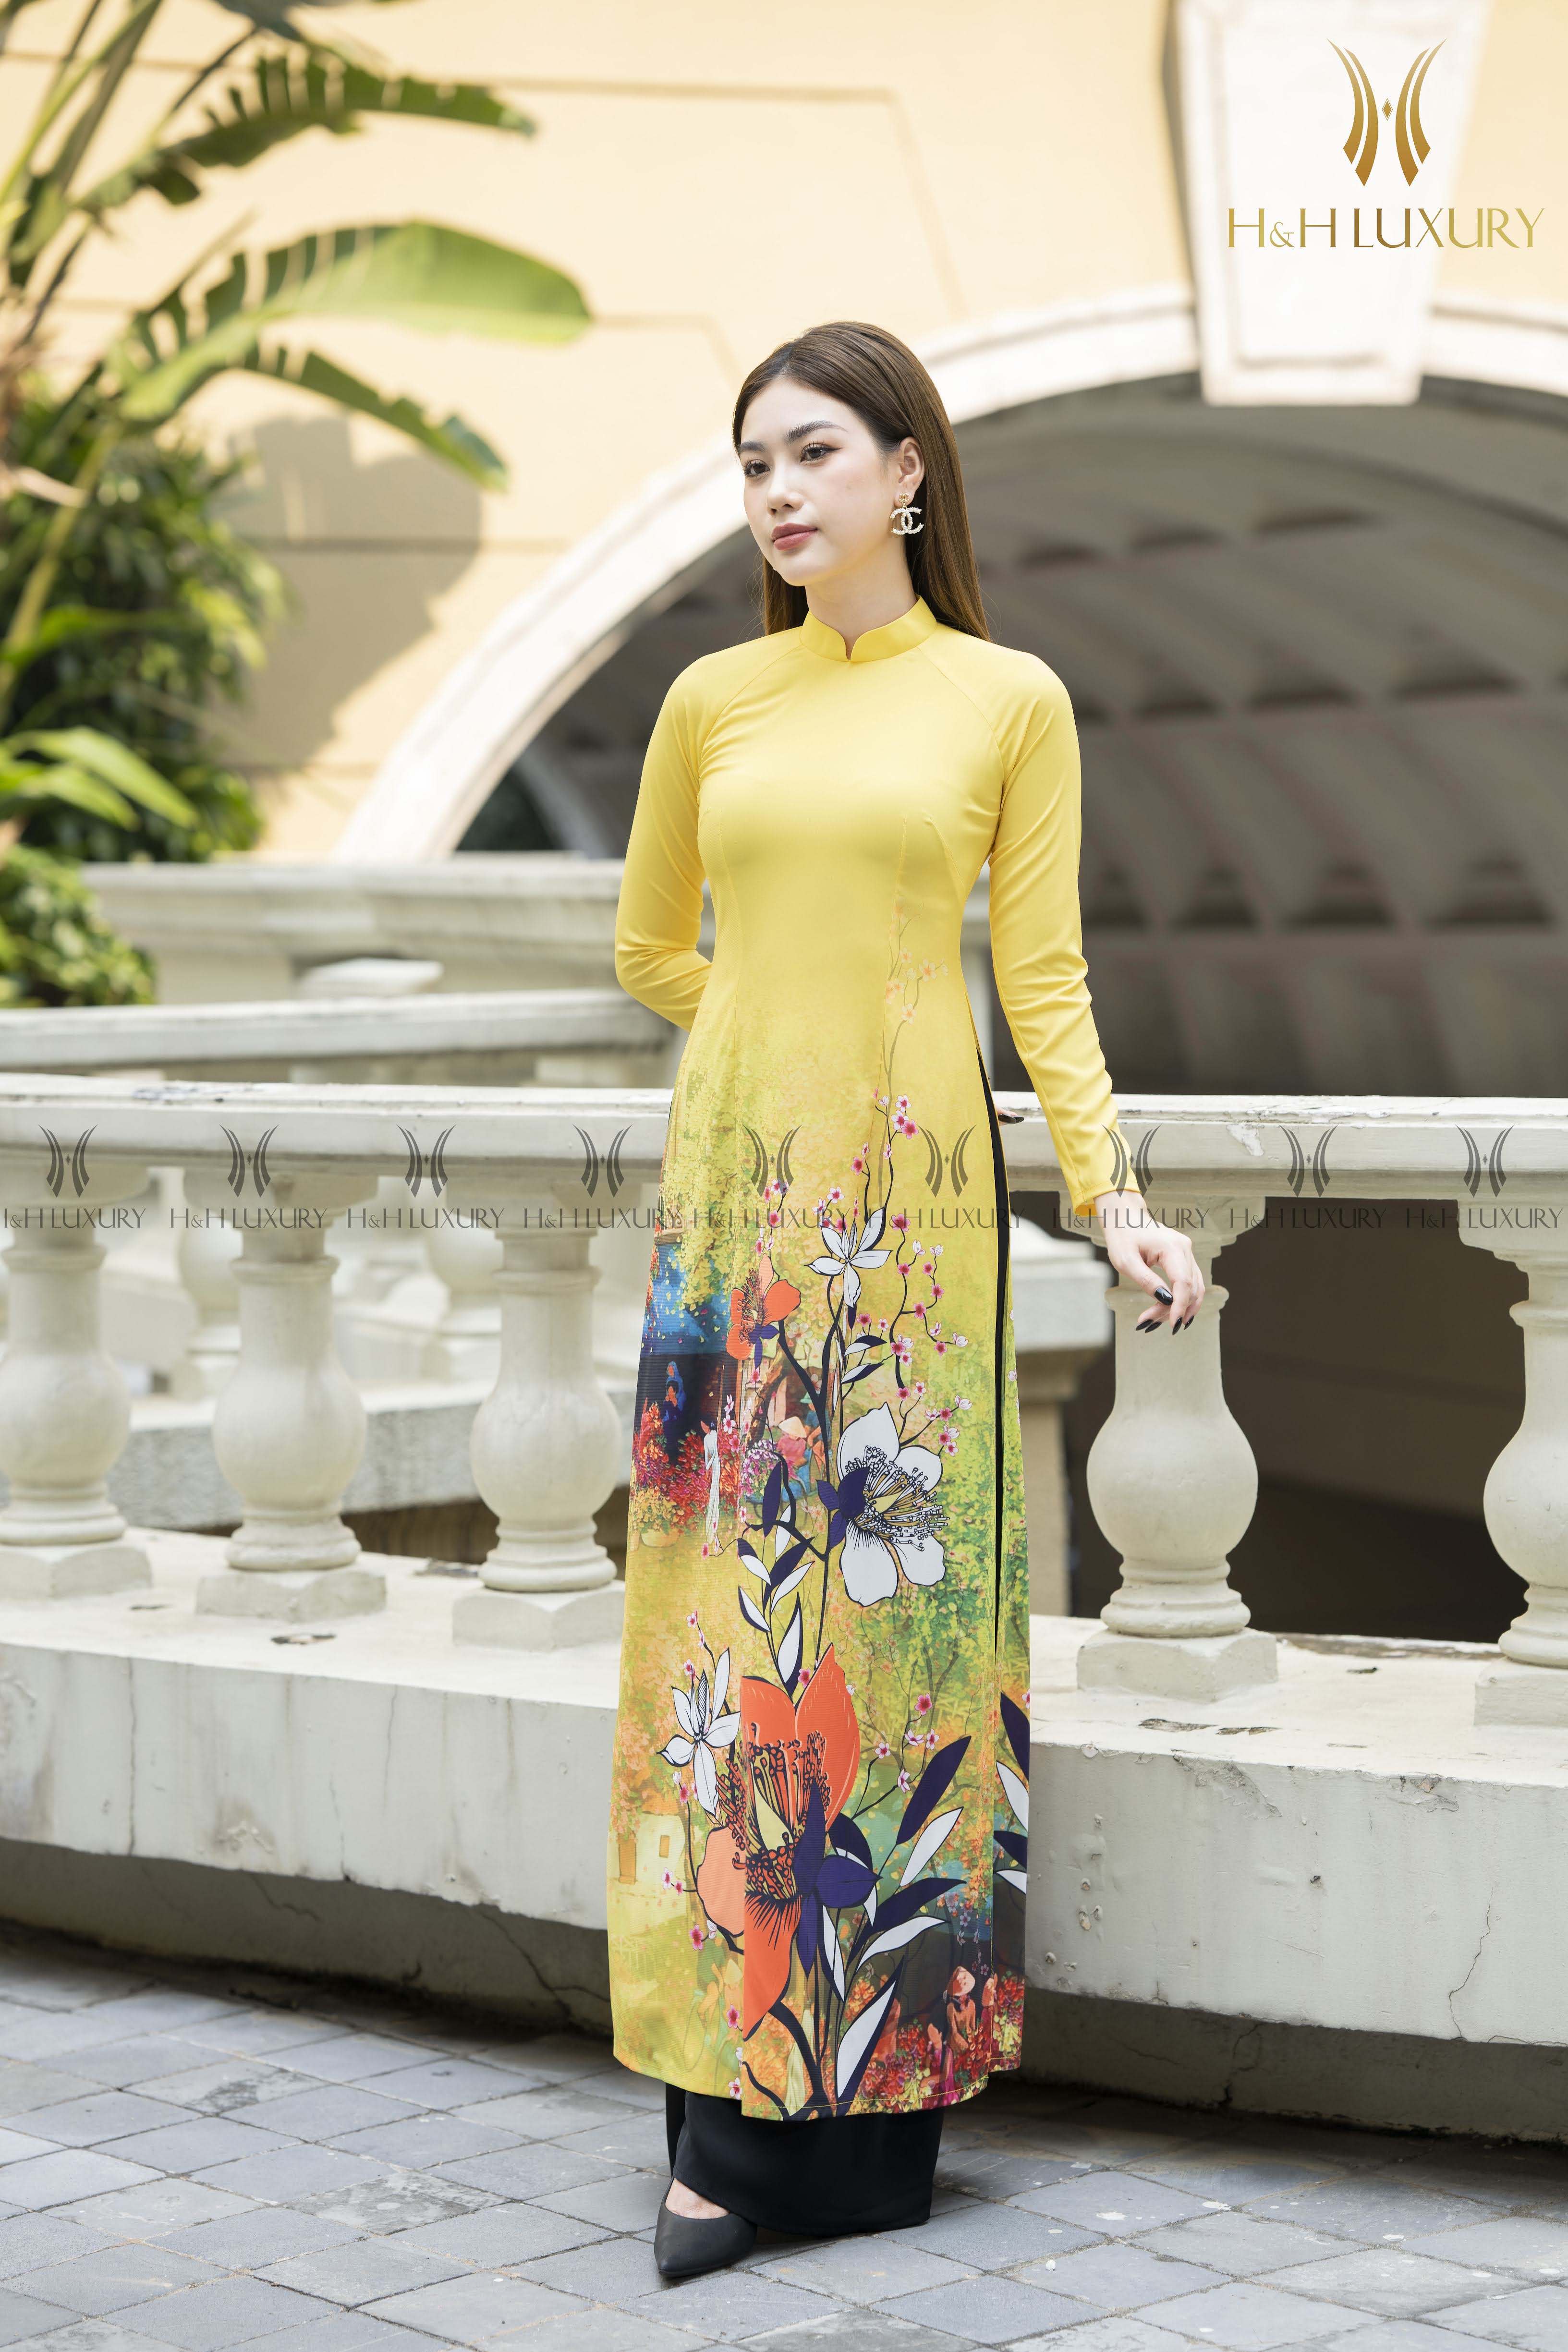 Áo dài lụa vàng không chỉ là trang phục truyền thống của người Việt, nó còn mang lại vẻ đẹp sang trọng, quý phái và tinh tế. Nếu bạn yêu thích văn hóa truyền thống Việt Nam, thì chắc chắn không thể bỏ qua ảnh về áo dài lụa vàng.